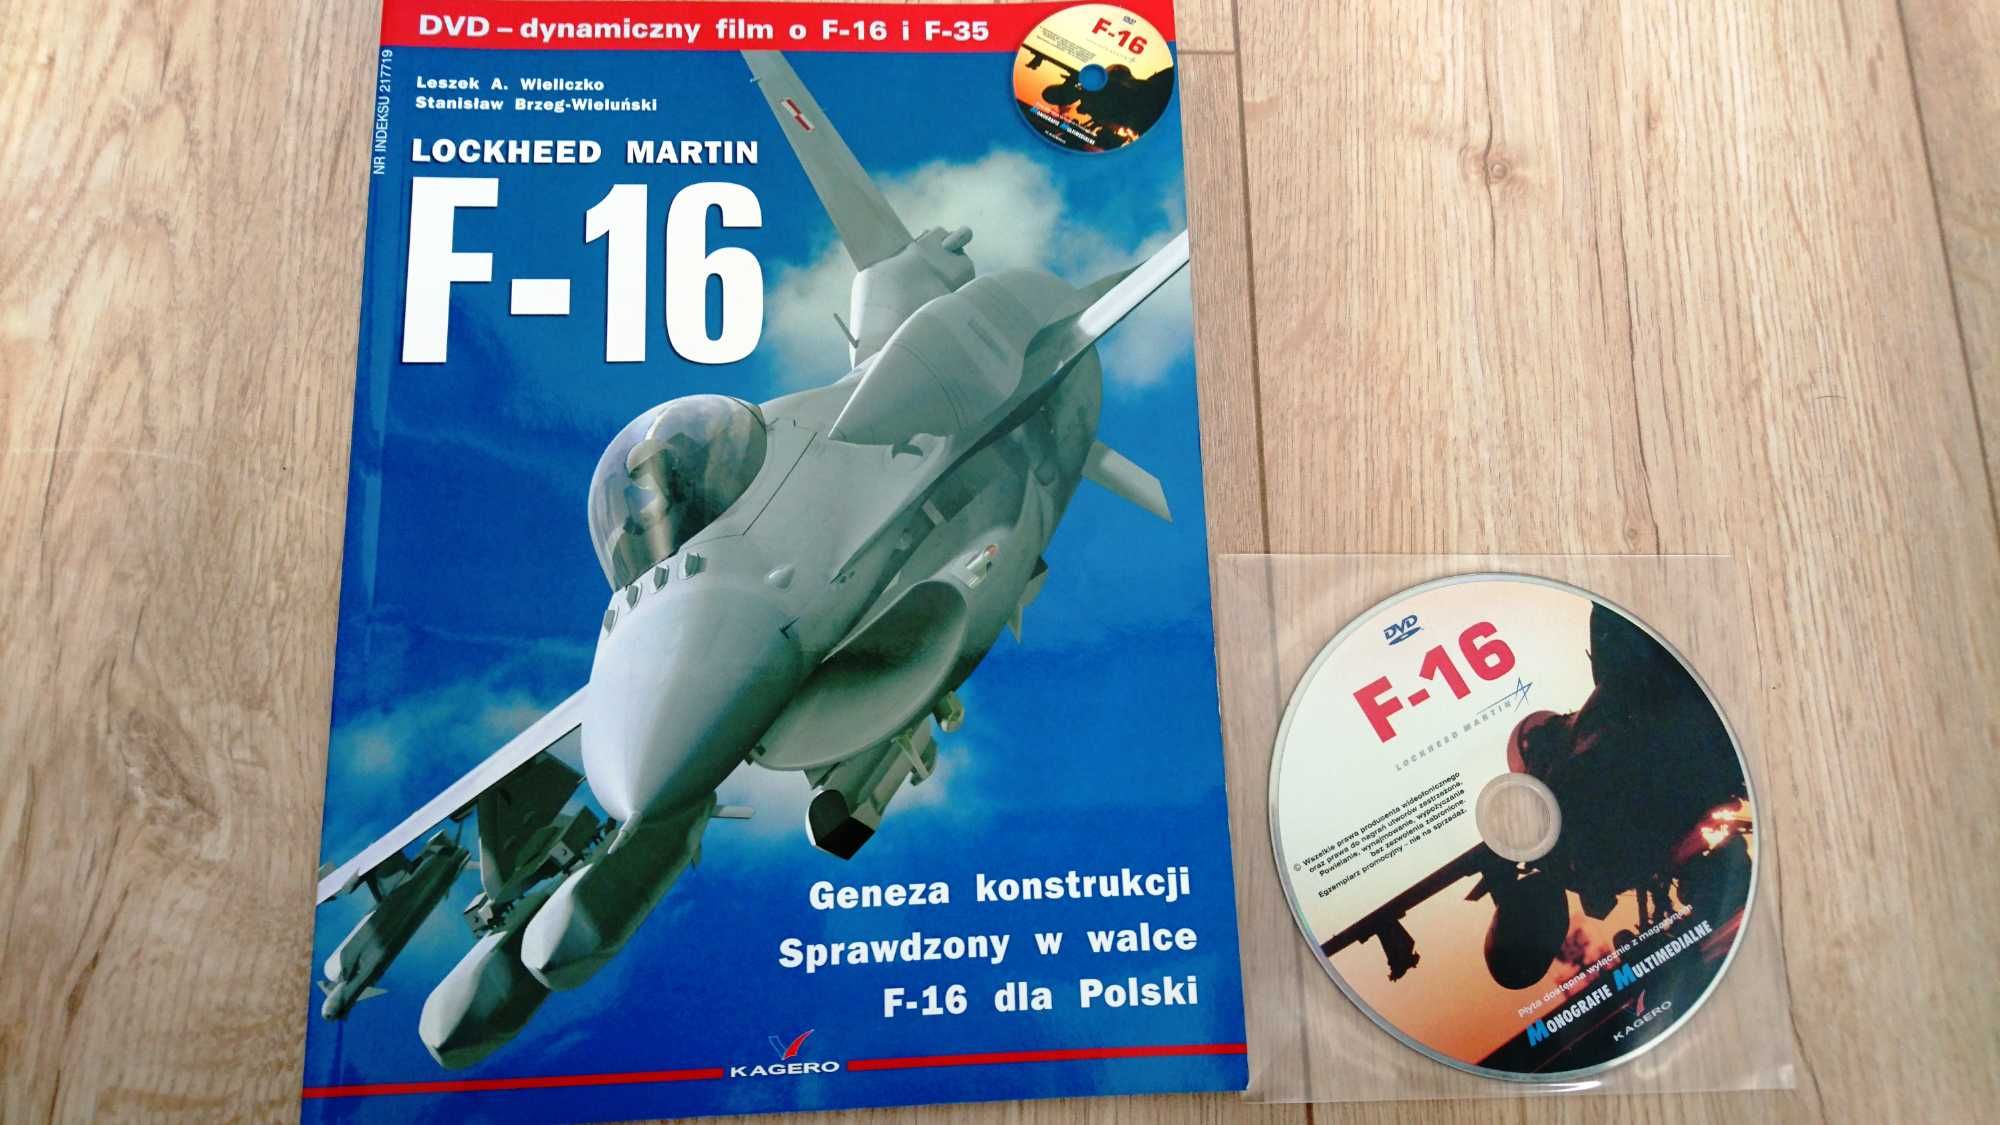 F-16 Lockheed Martin wydawnictwo KAGERO + płyta DVD